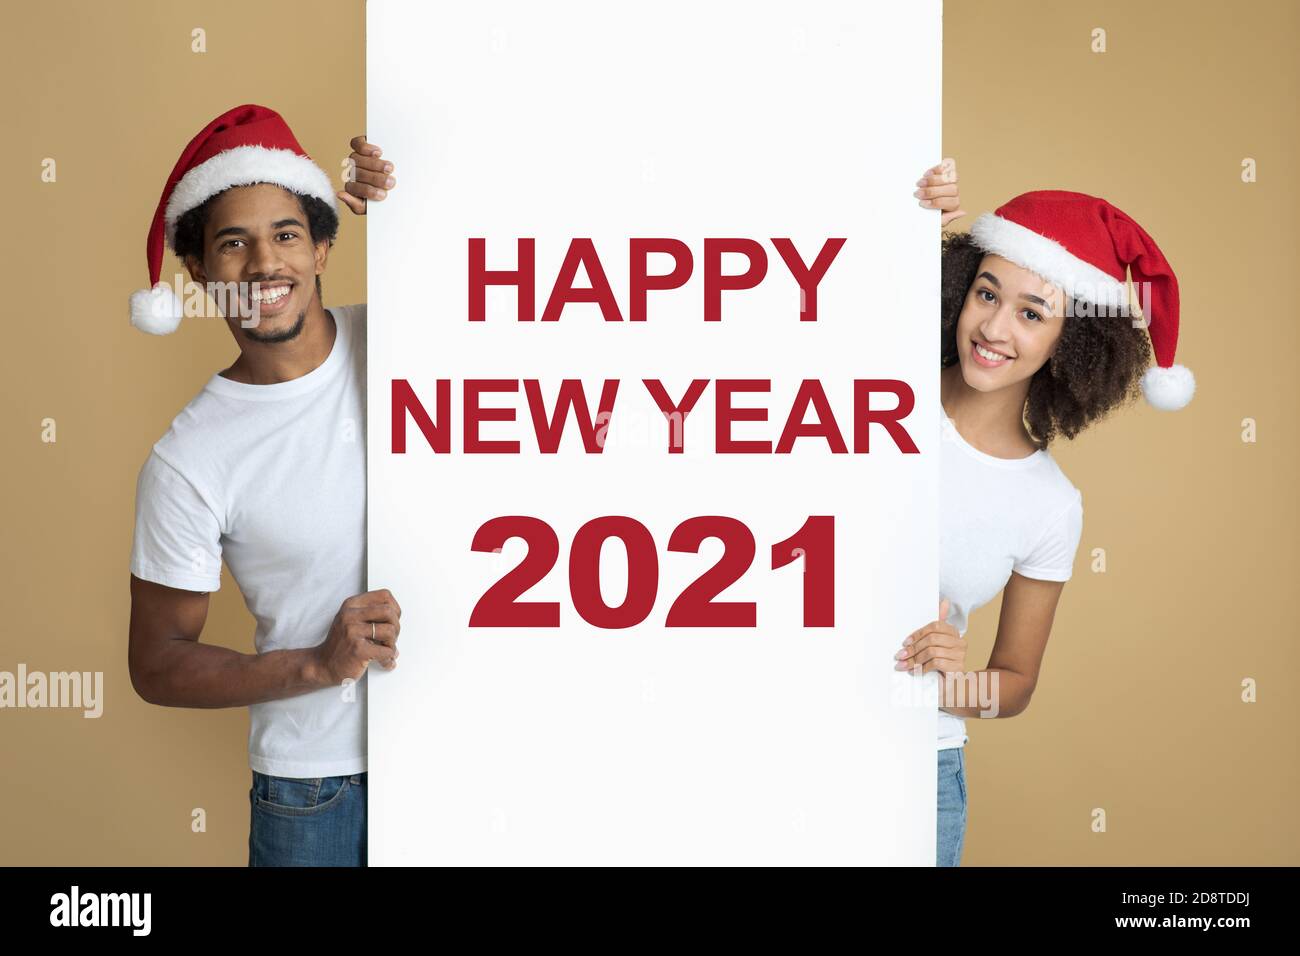 Panneau d'affichage de bienvenue avec inscription, bonne année 2021 Banque D'Images